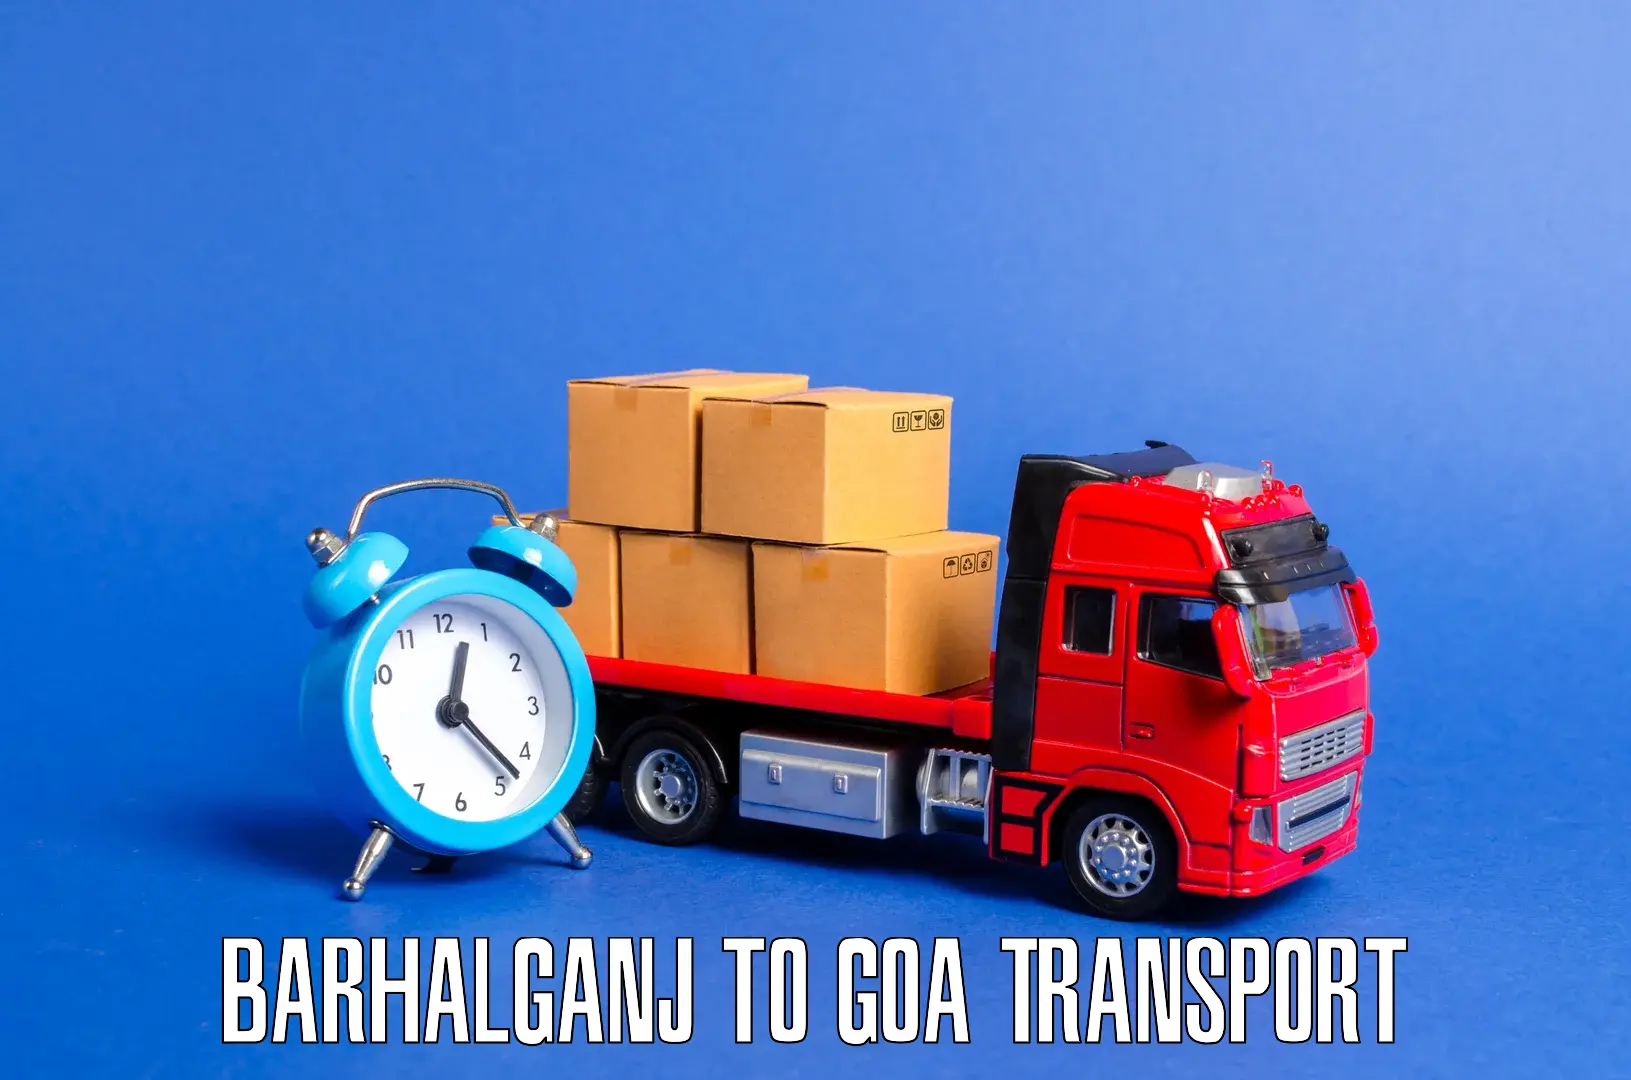 Nearby transport service Barhalganj to Vasco da Gama